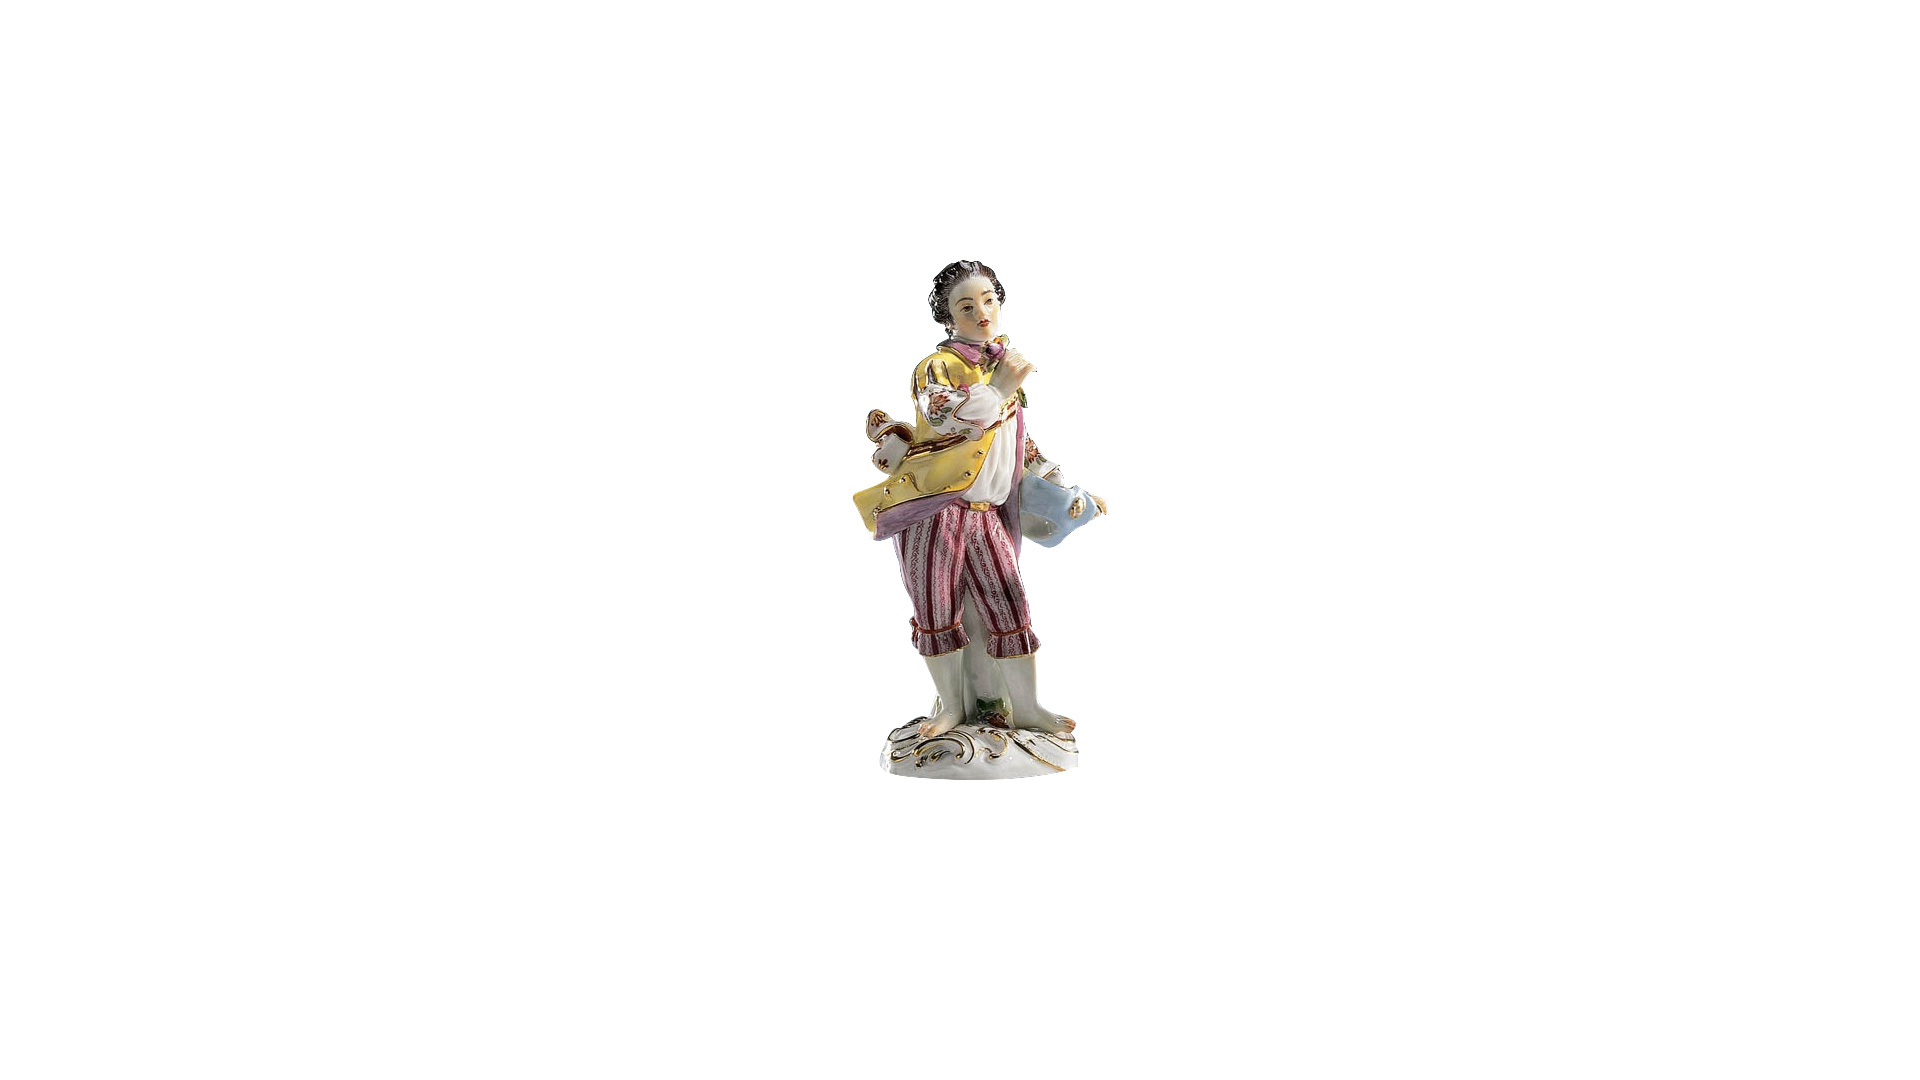 Фигурка Meissen 14,5 см Мальчик с цветком и шляпой, И-ИКэндлер,1740г, пара к 60337